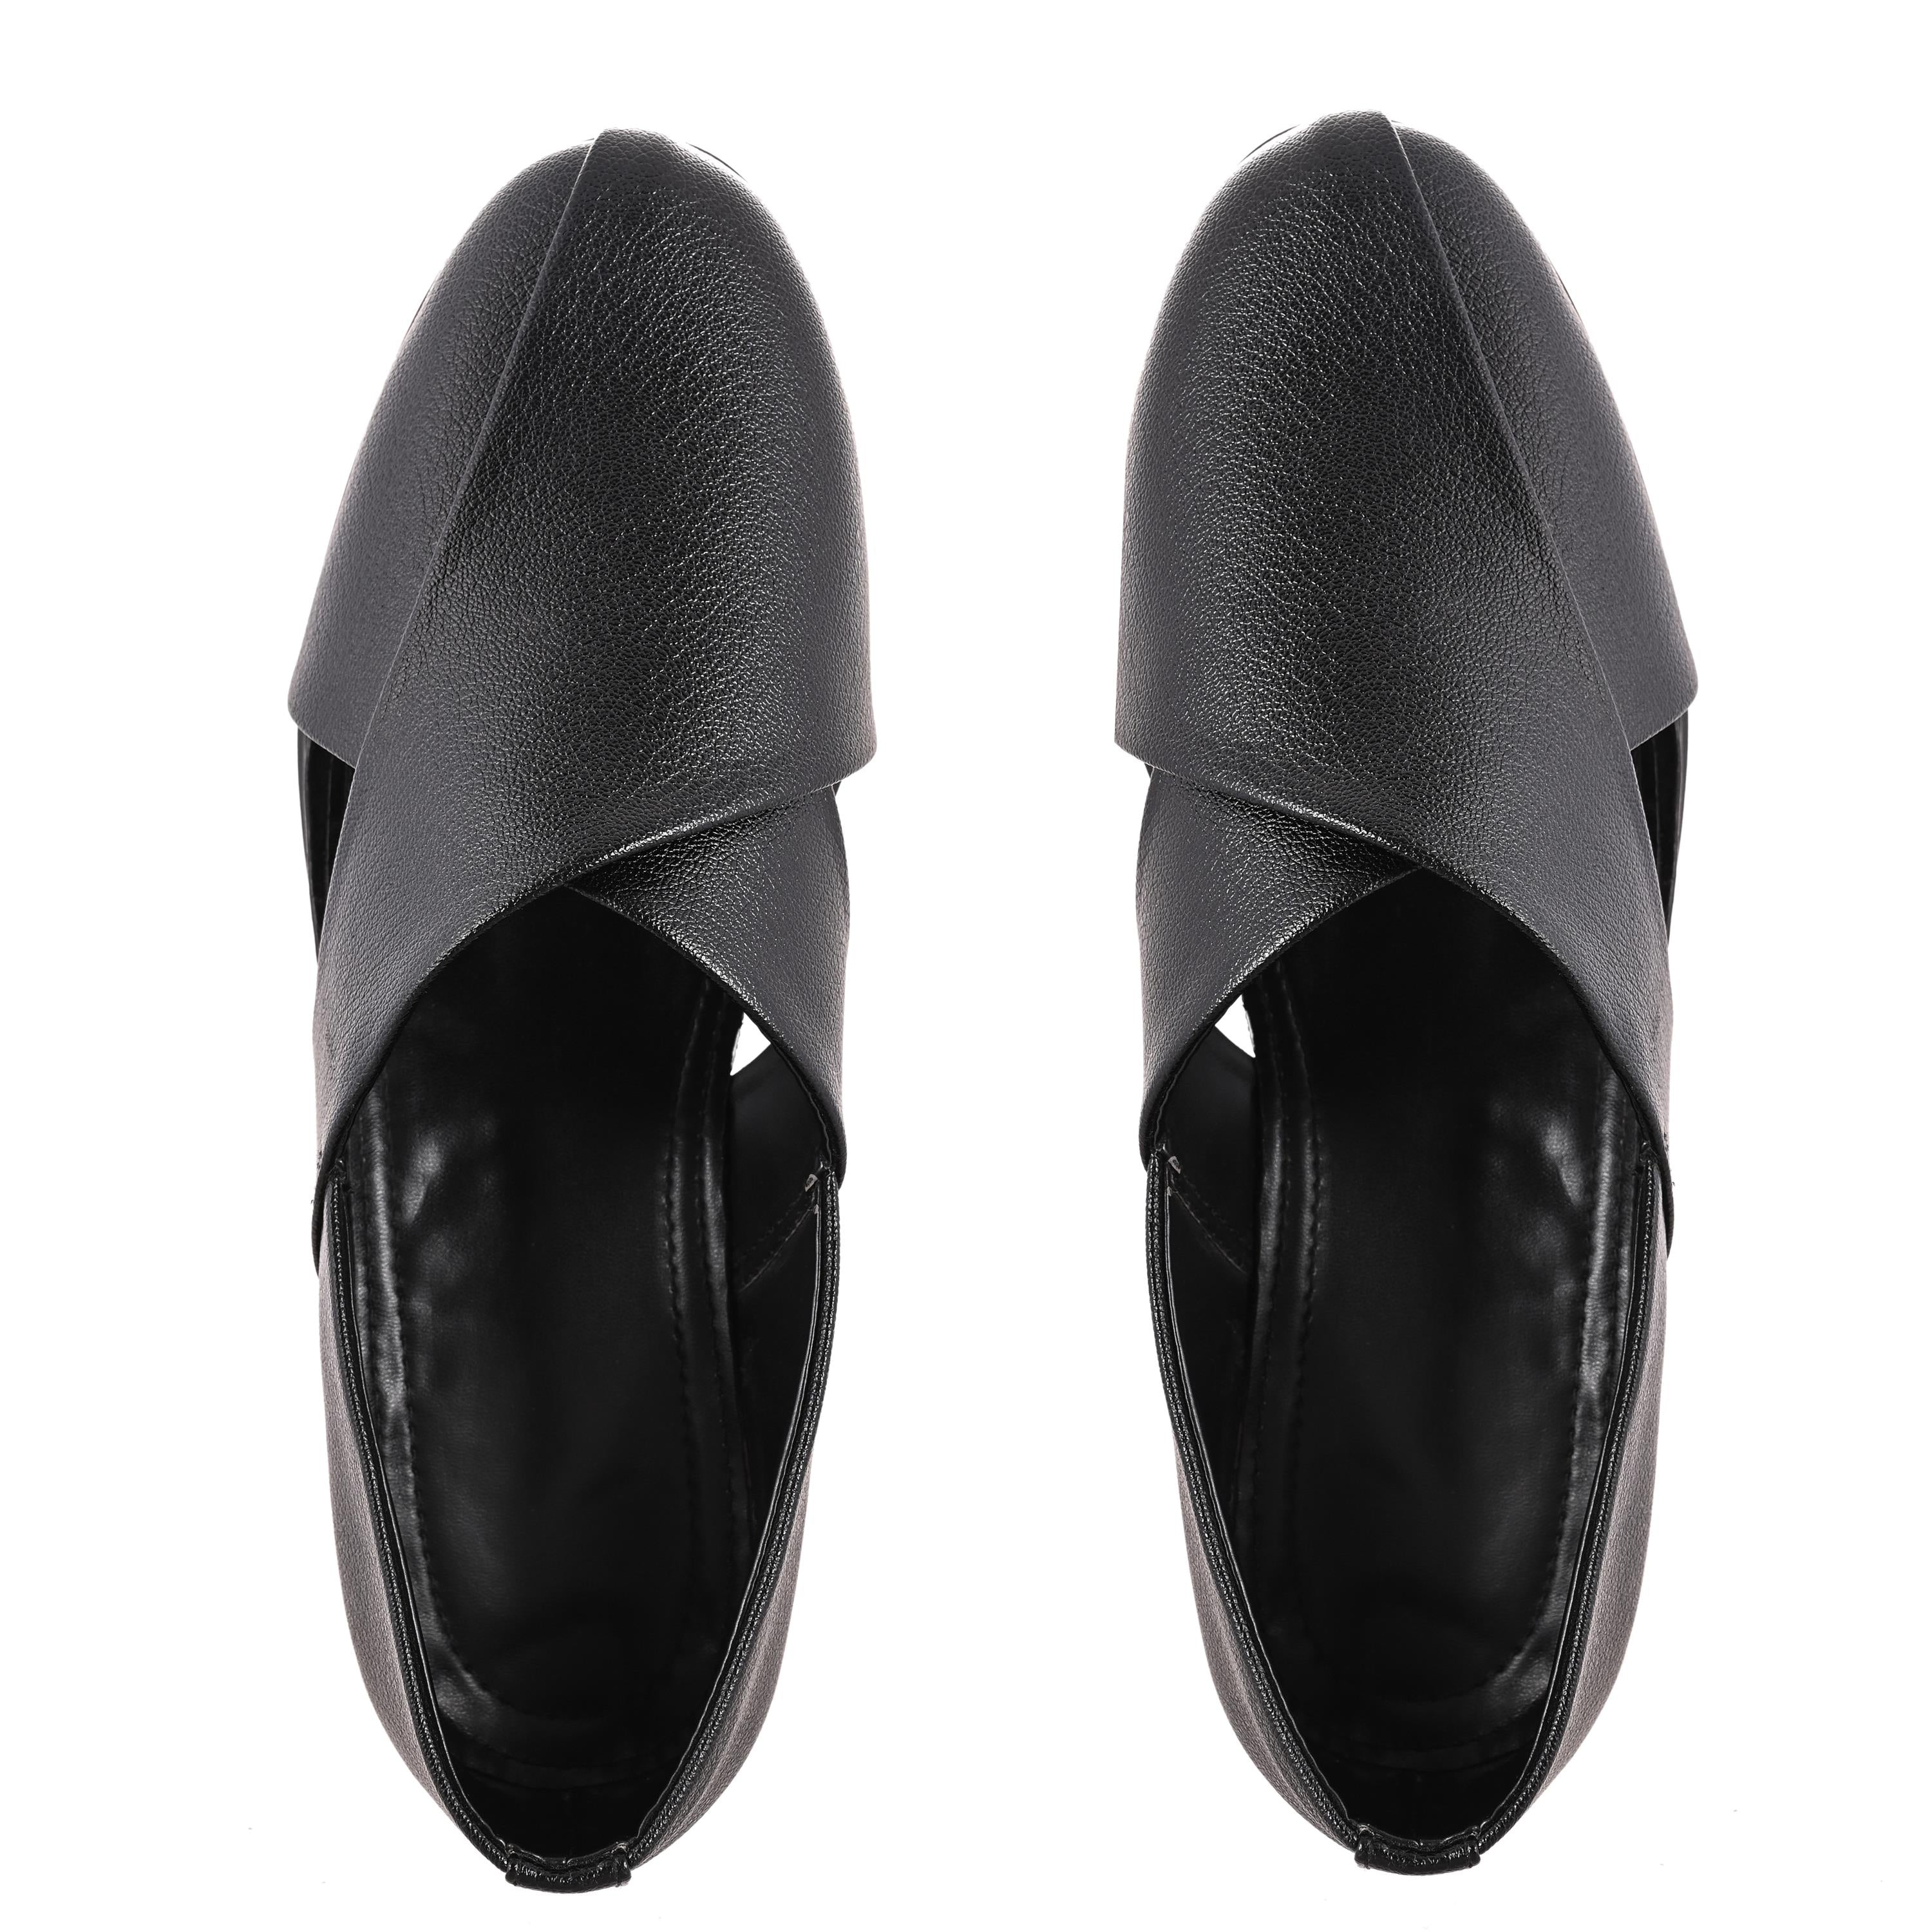 Black Slip on Men's Sandals